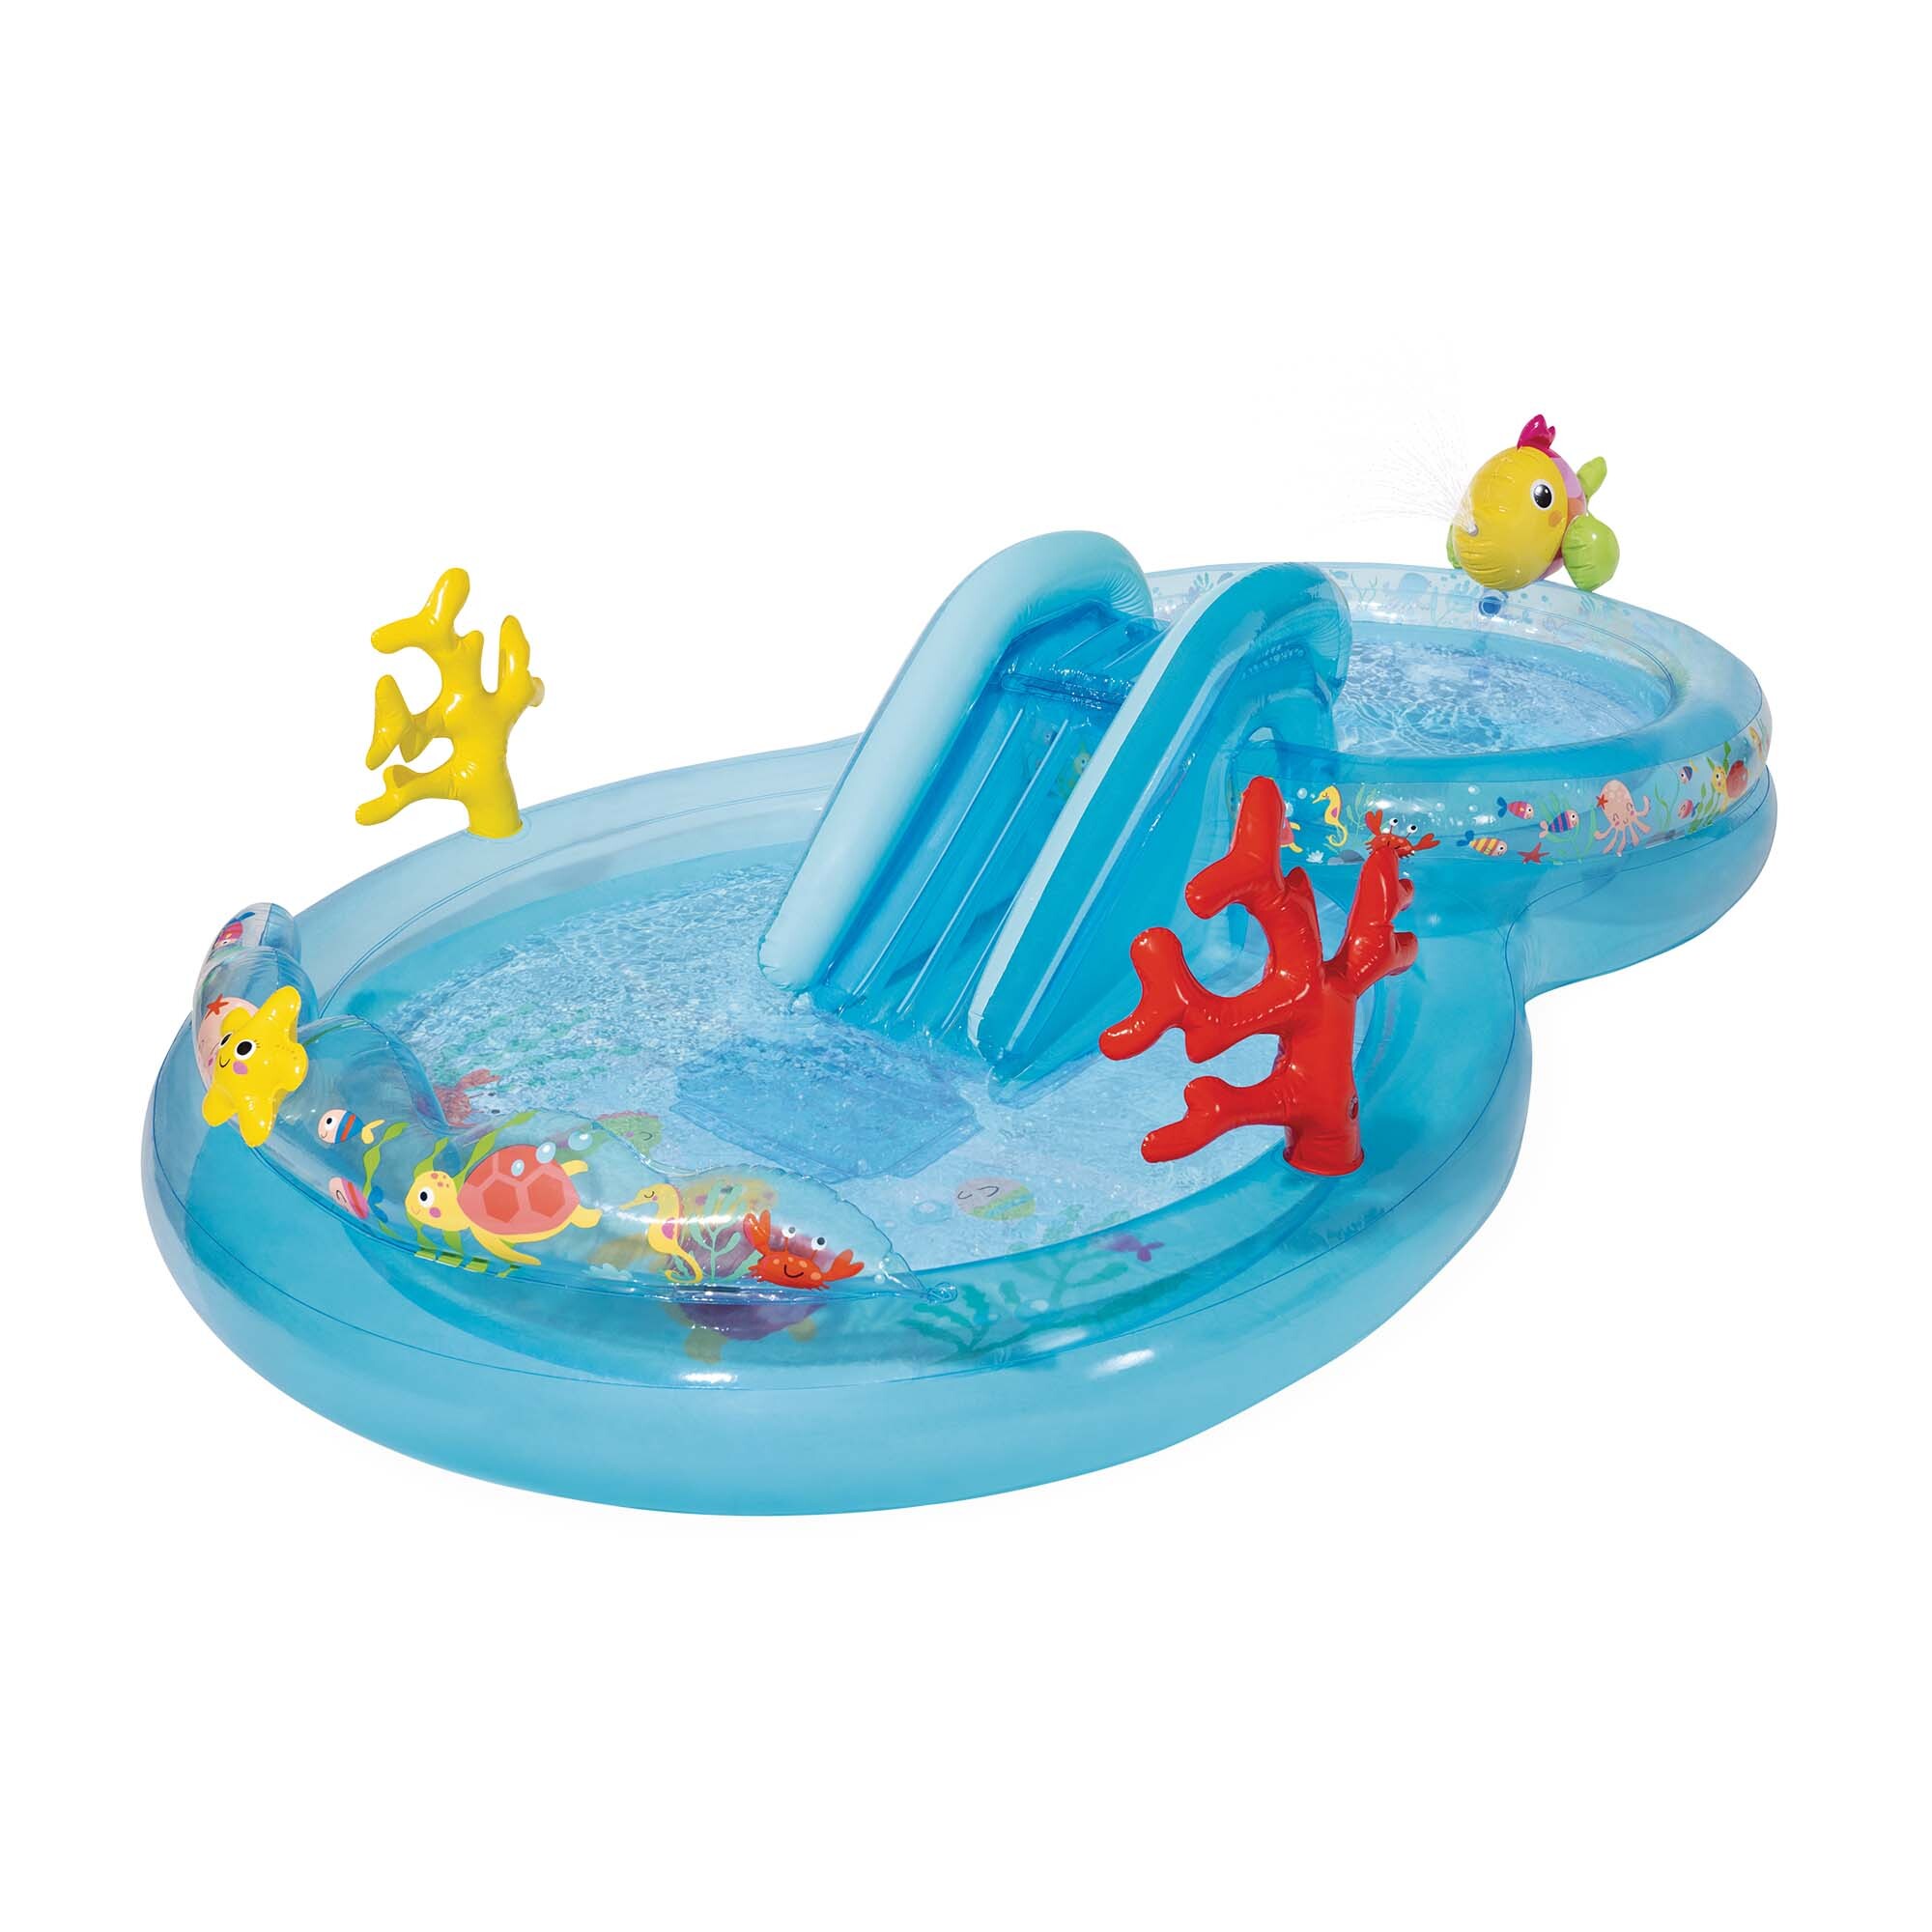 Intex - play center under the sea piscina gonfiabile, con palline, pvc, multicolore, 310x193x71 cm - INTEX